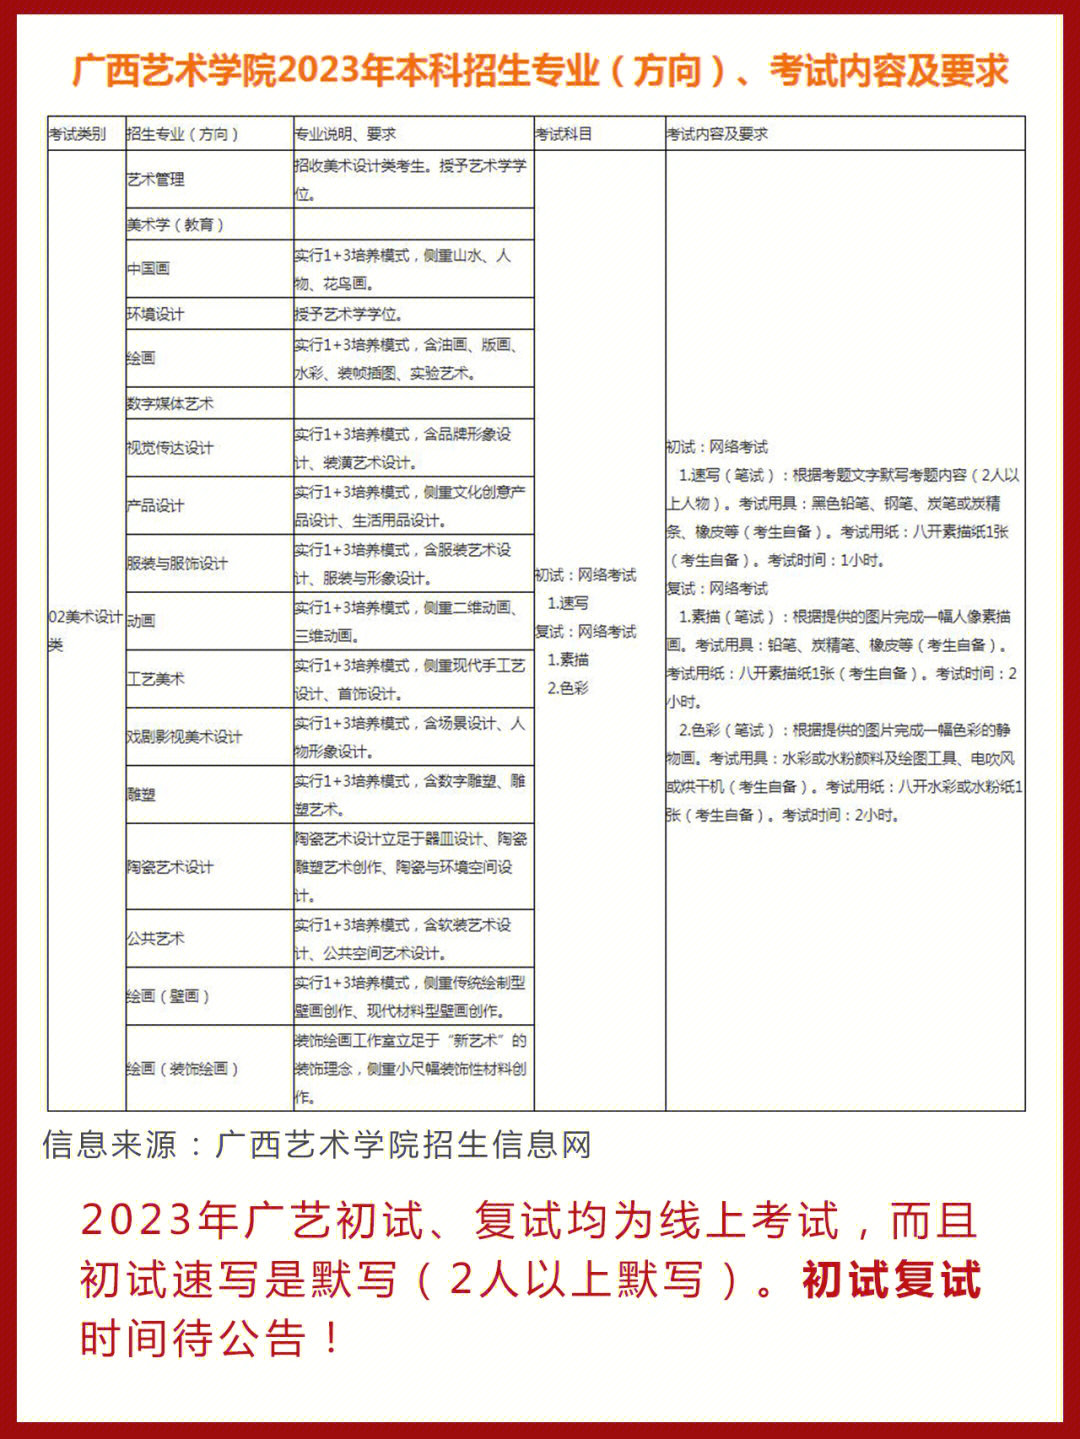 2023届广艺校考改革了采取线上考试